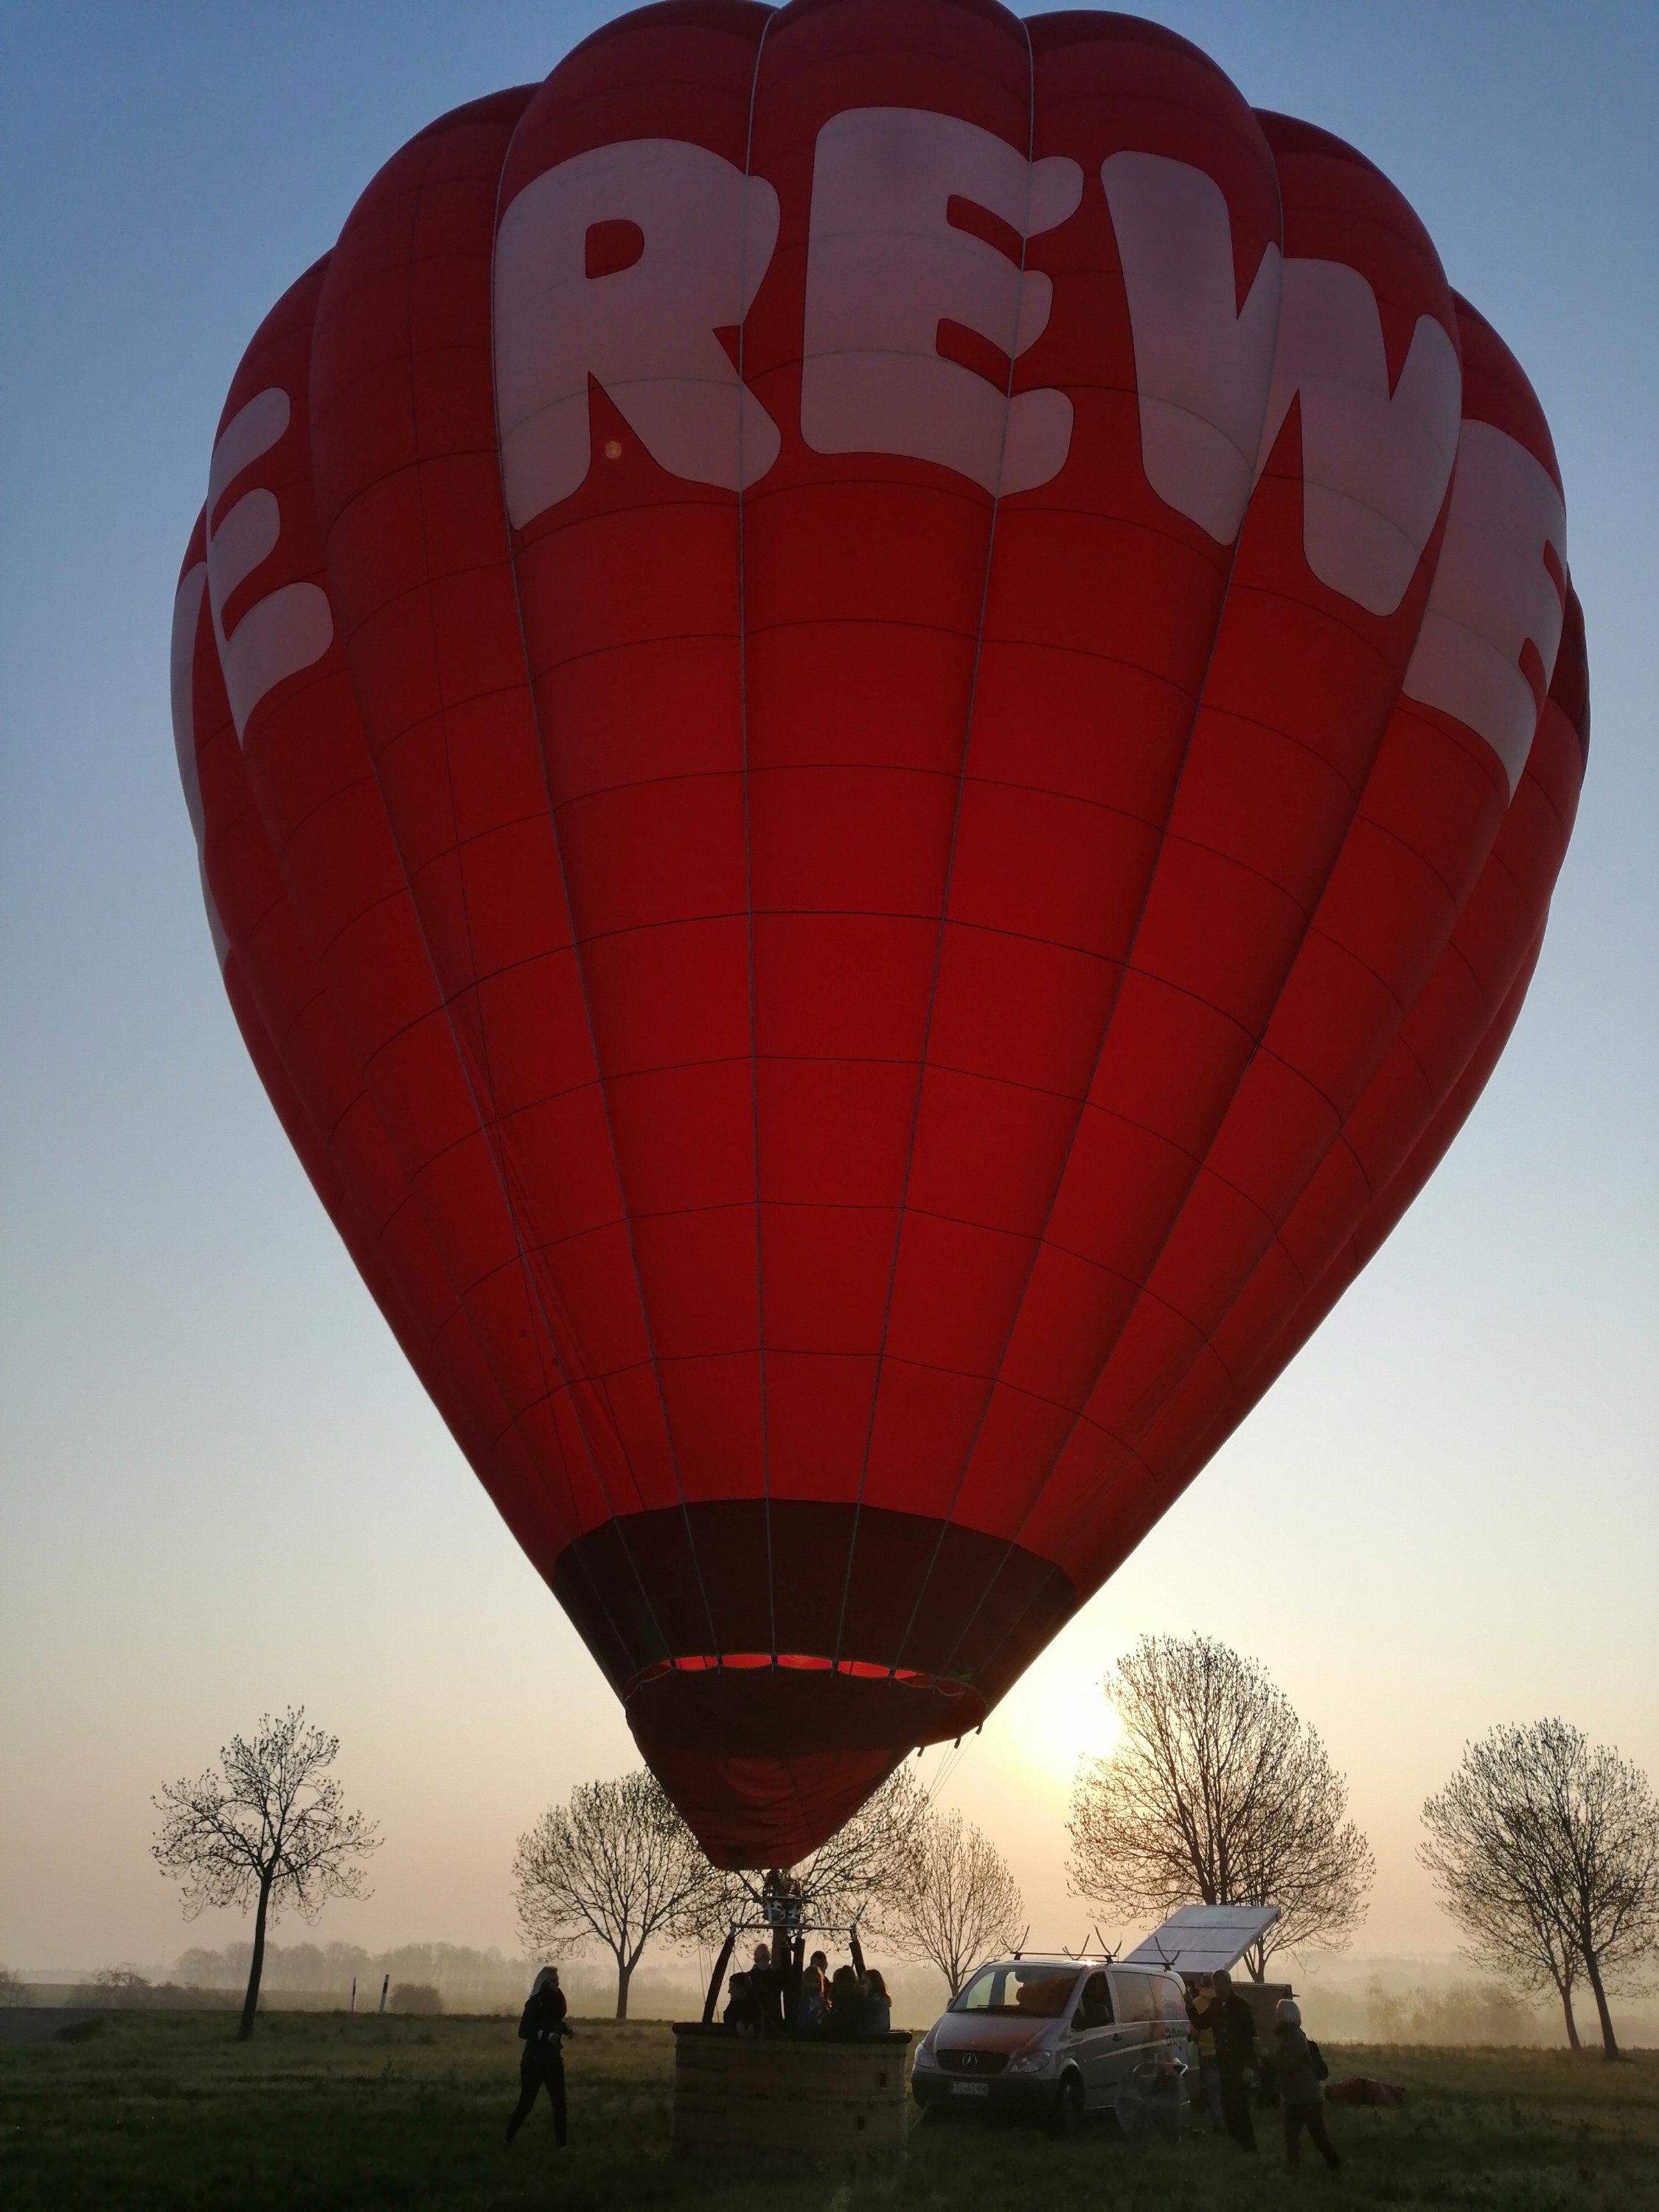 REWE Ballon startklar für Ballonstart Sonnenaufgang in Döbeln. Ballonfahrt Sachsen Ballonscheune Ballonabenteuer